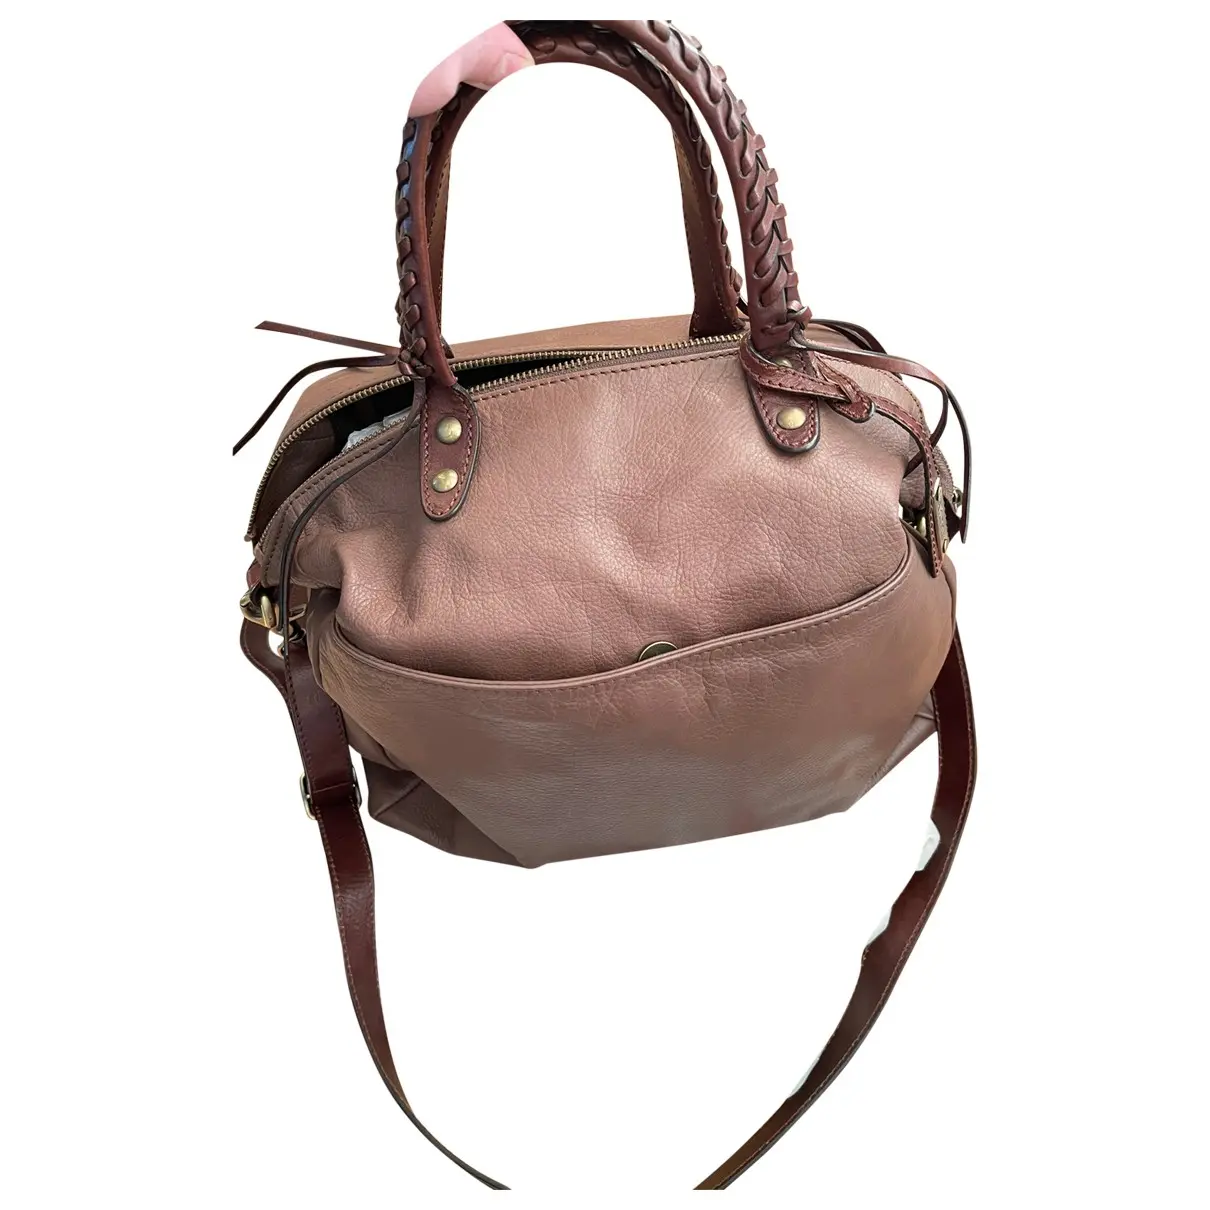 Leather handbag Abro